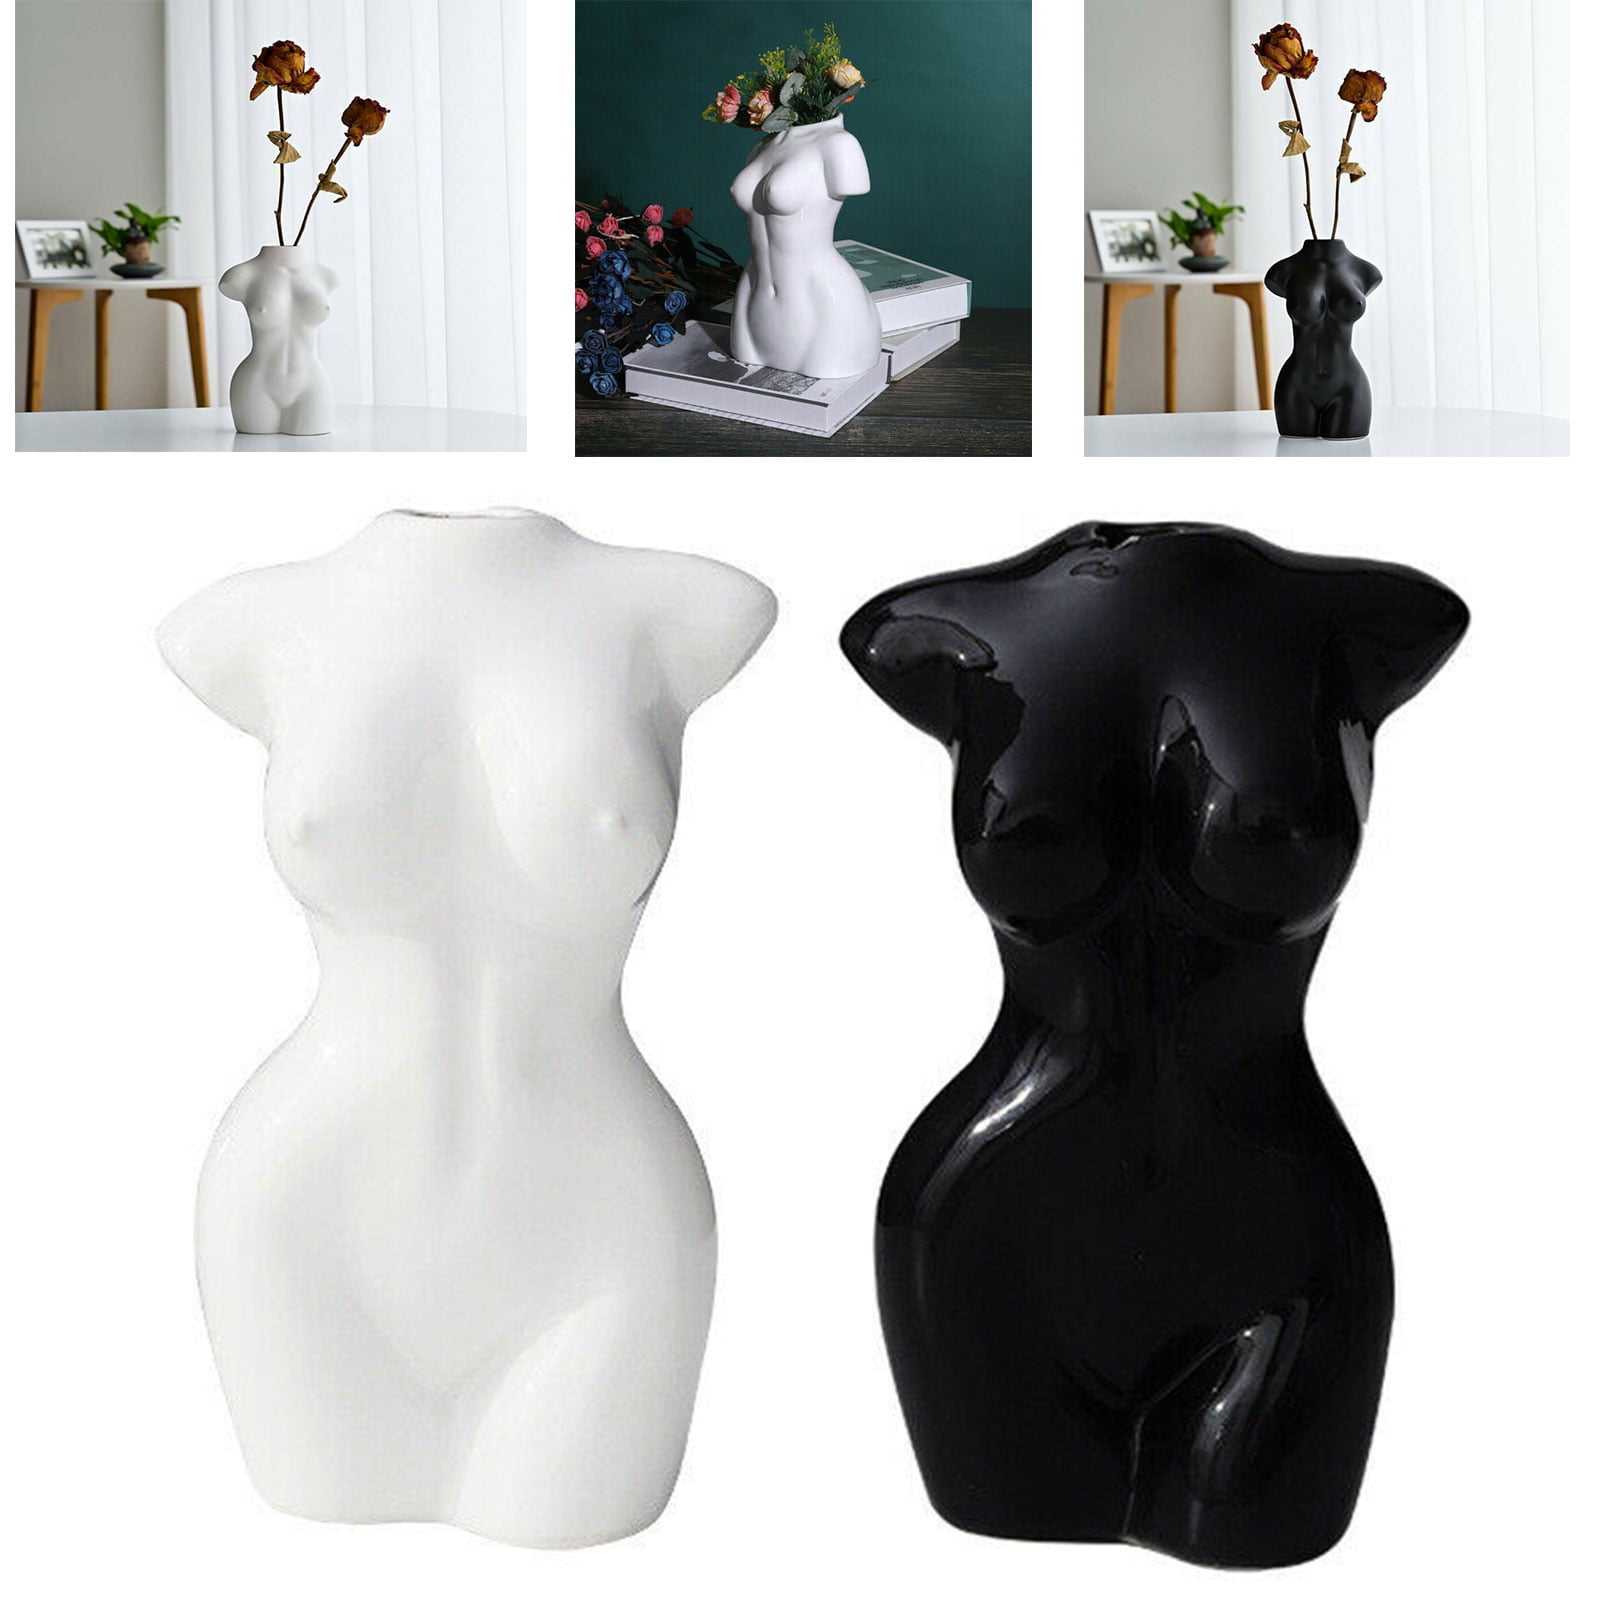 Details about   Figurine Vase Tissue Holder Home Living Room Office Desk Home Garden Decoration 